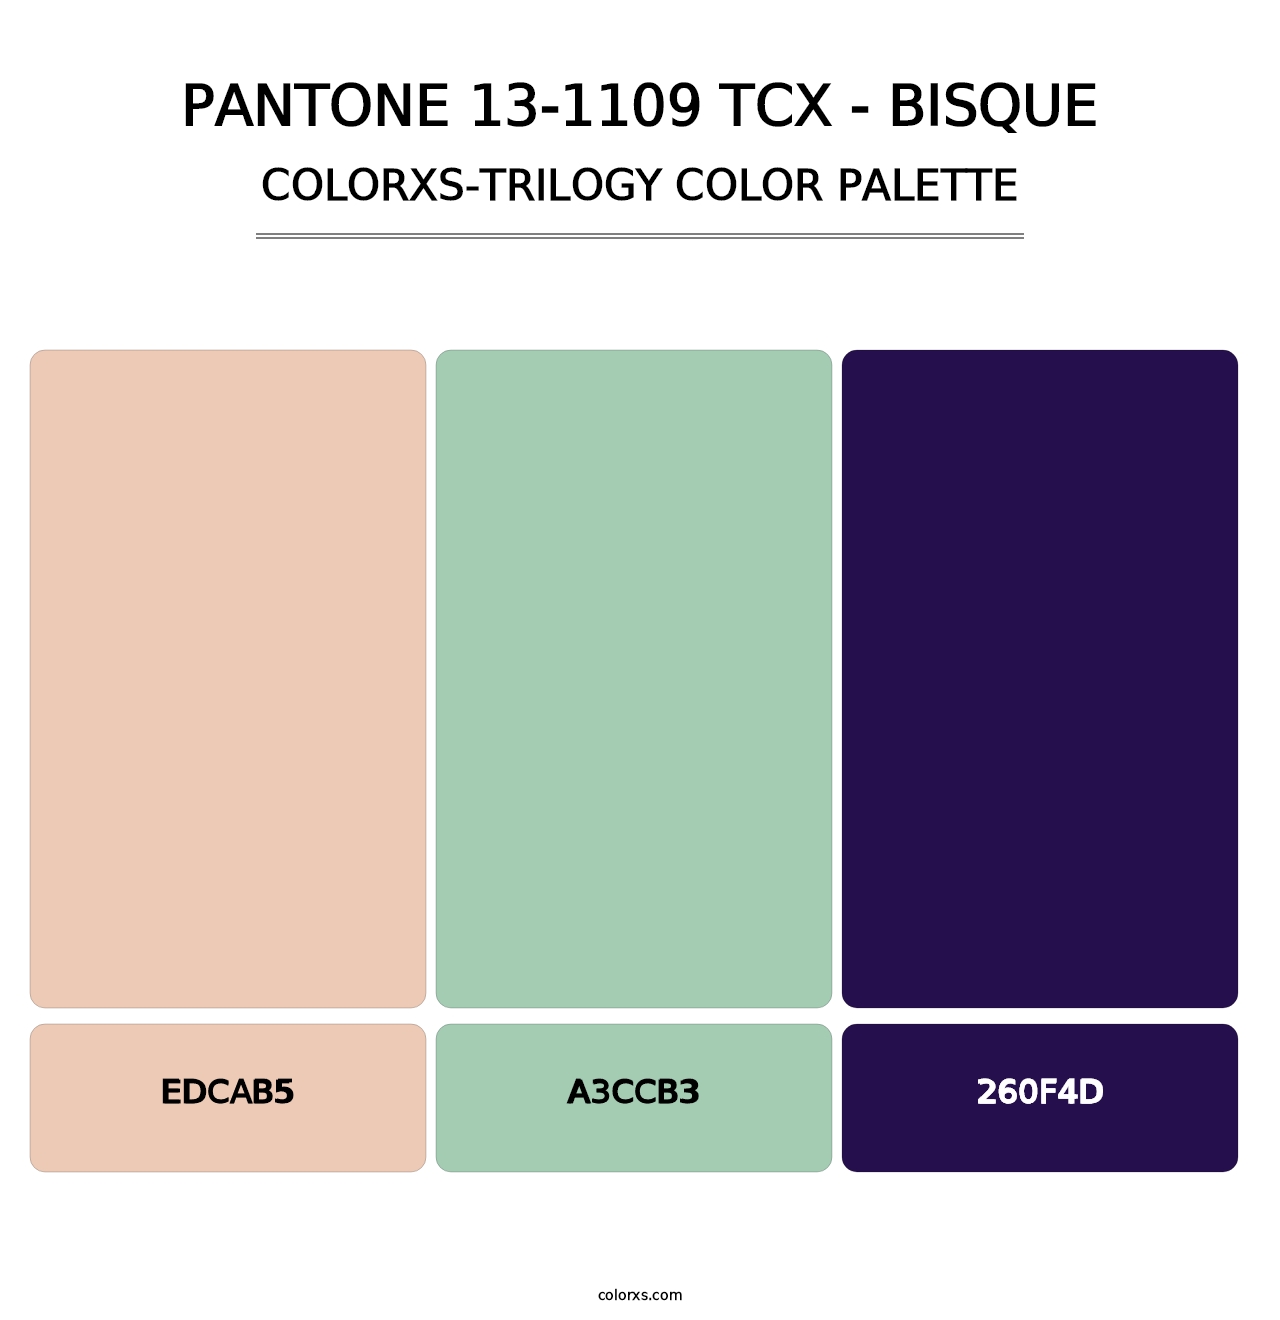 PANTONE 13-1109 TCX - Bisque - Colorxs Trilogy Palette